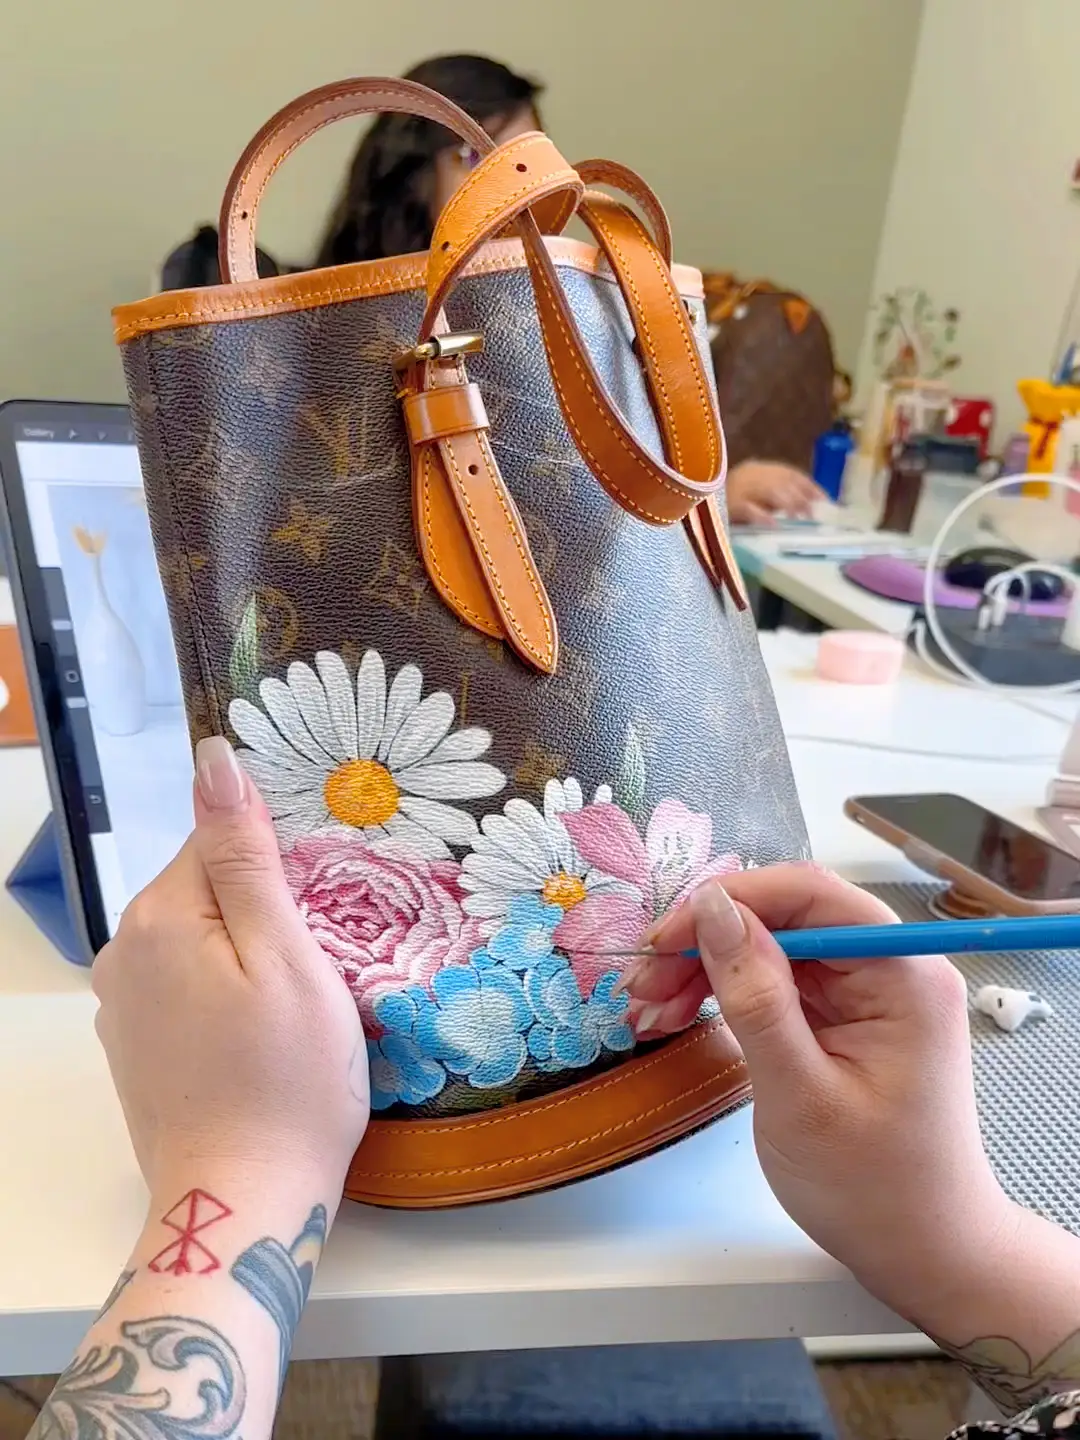 Louis Vuitton-inspired handbag, smaller than a grain of rice